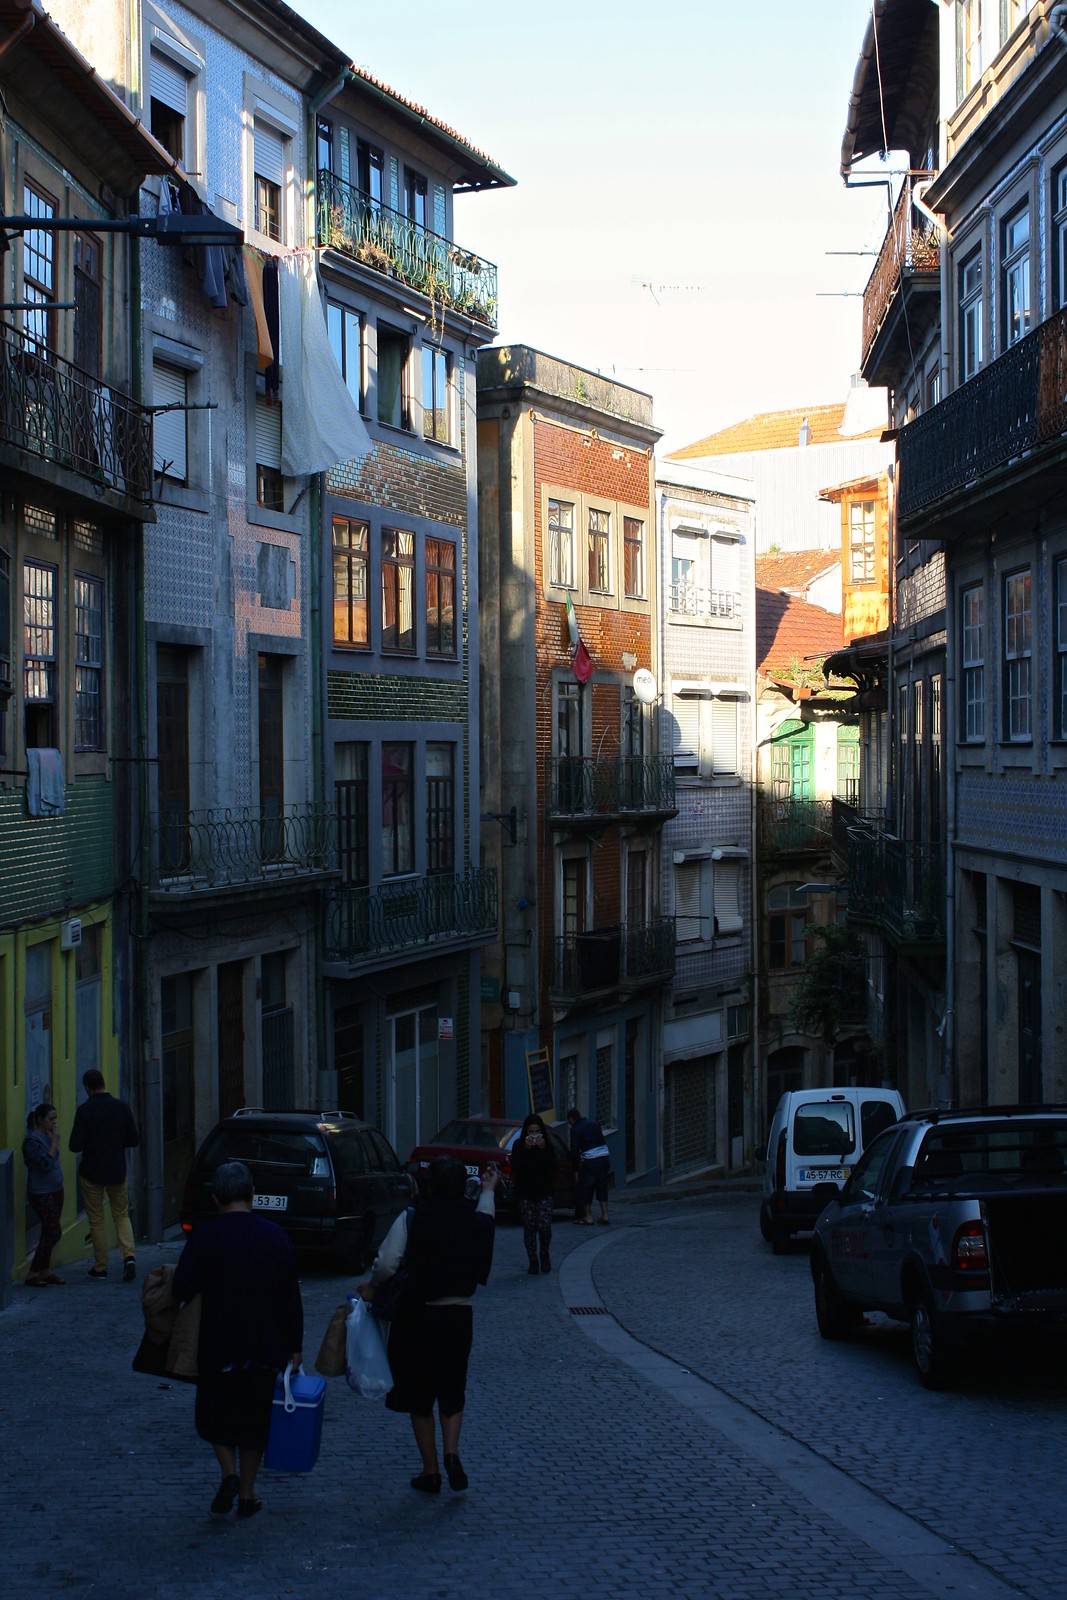 Harry Potter in Porto, Portugal